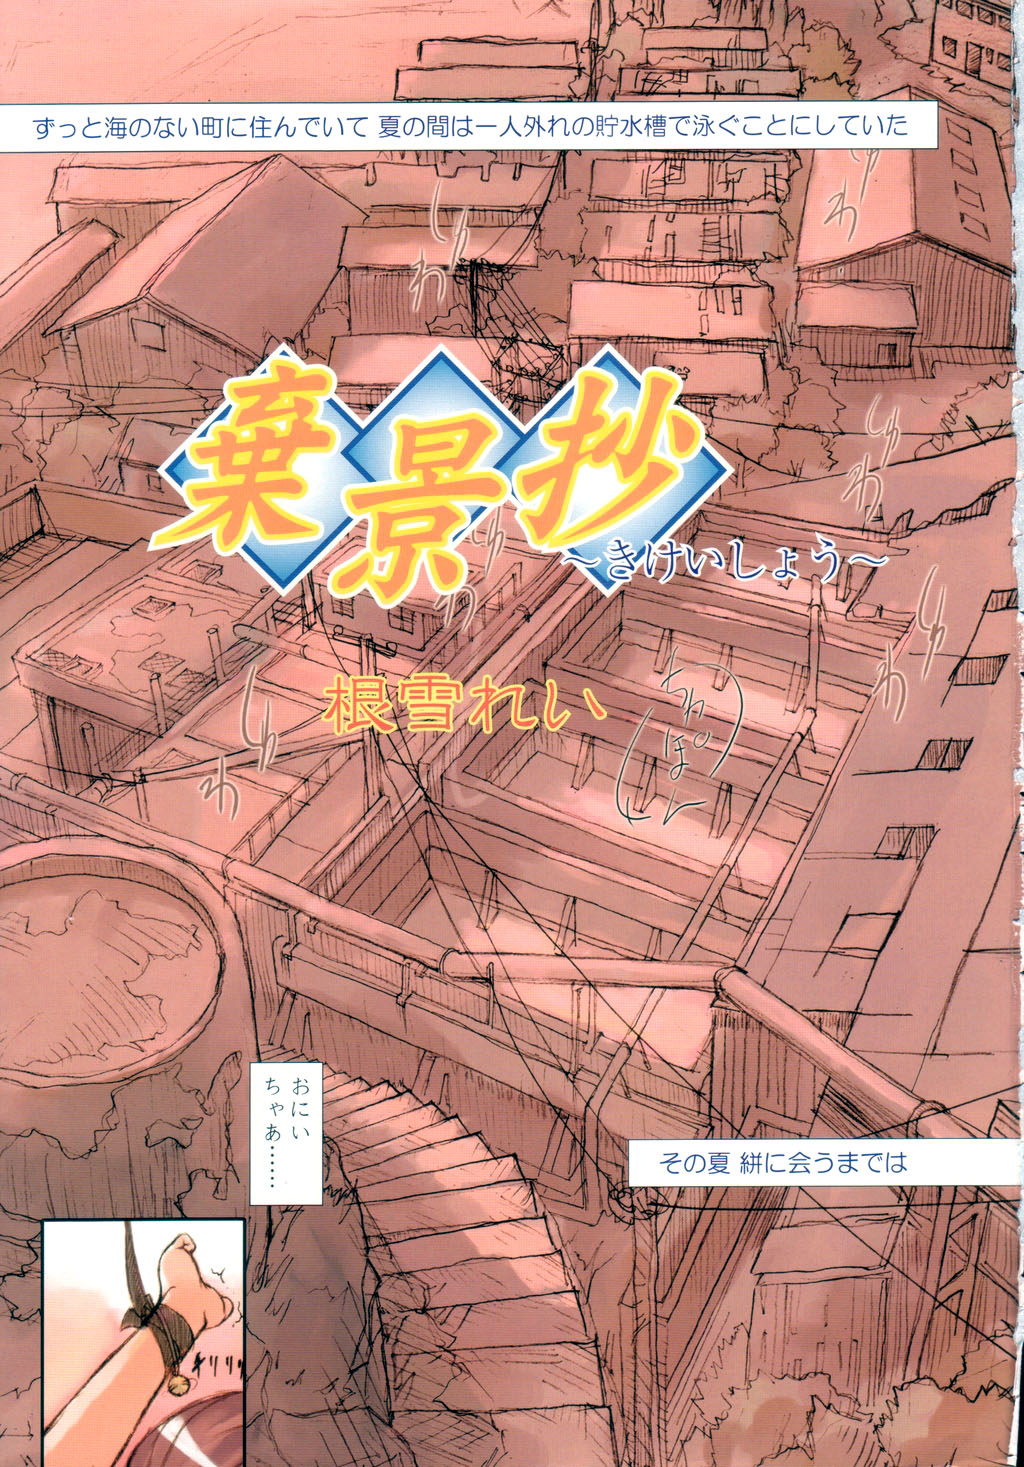 COMIC LO 2003年9月号 Vol.3